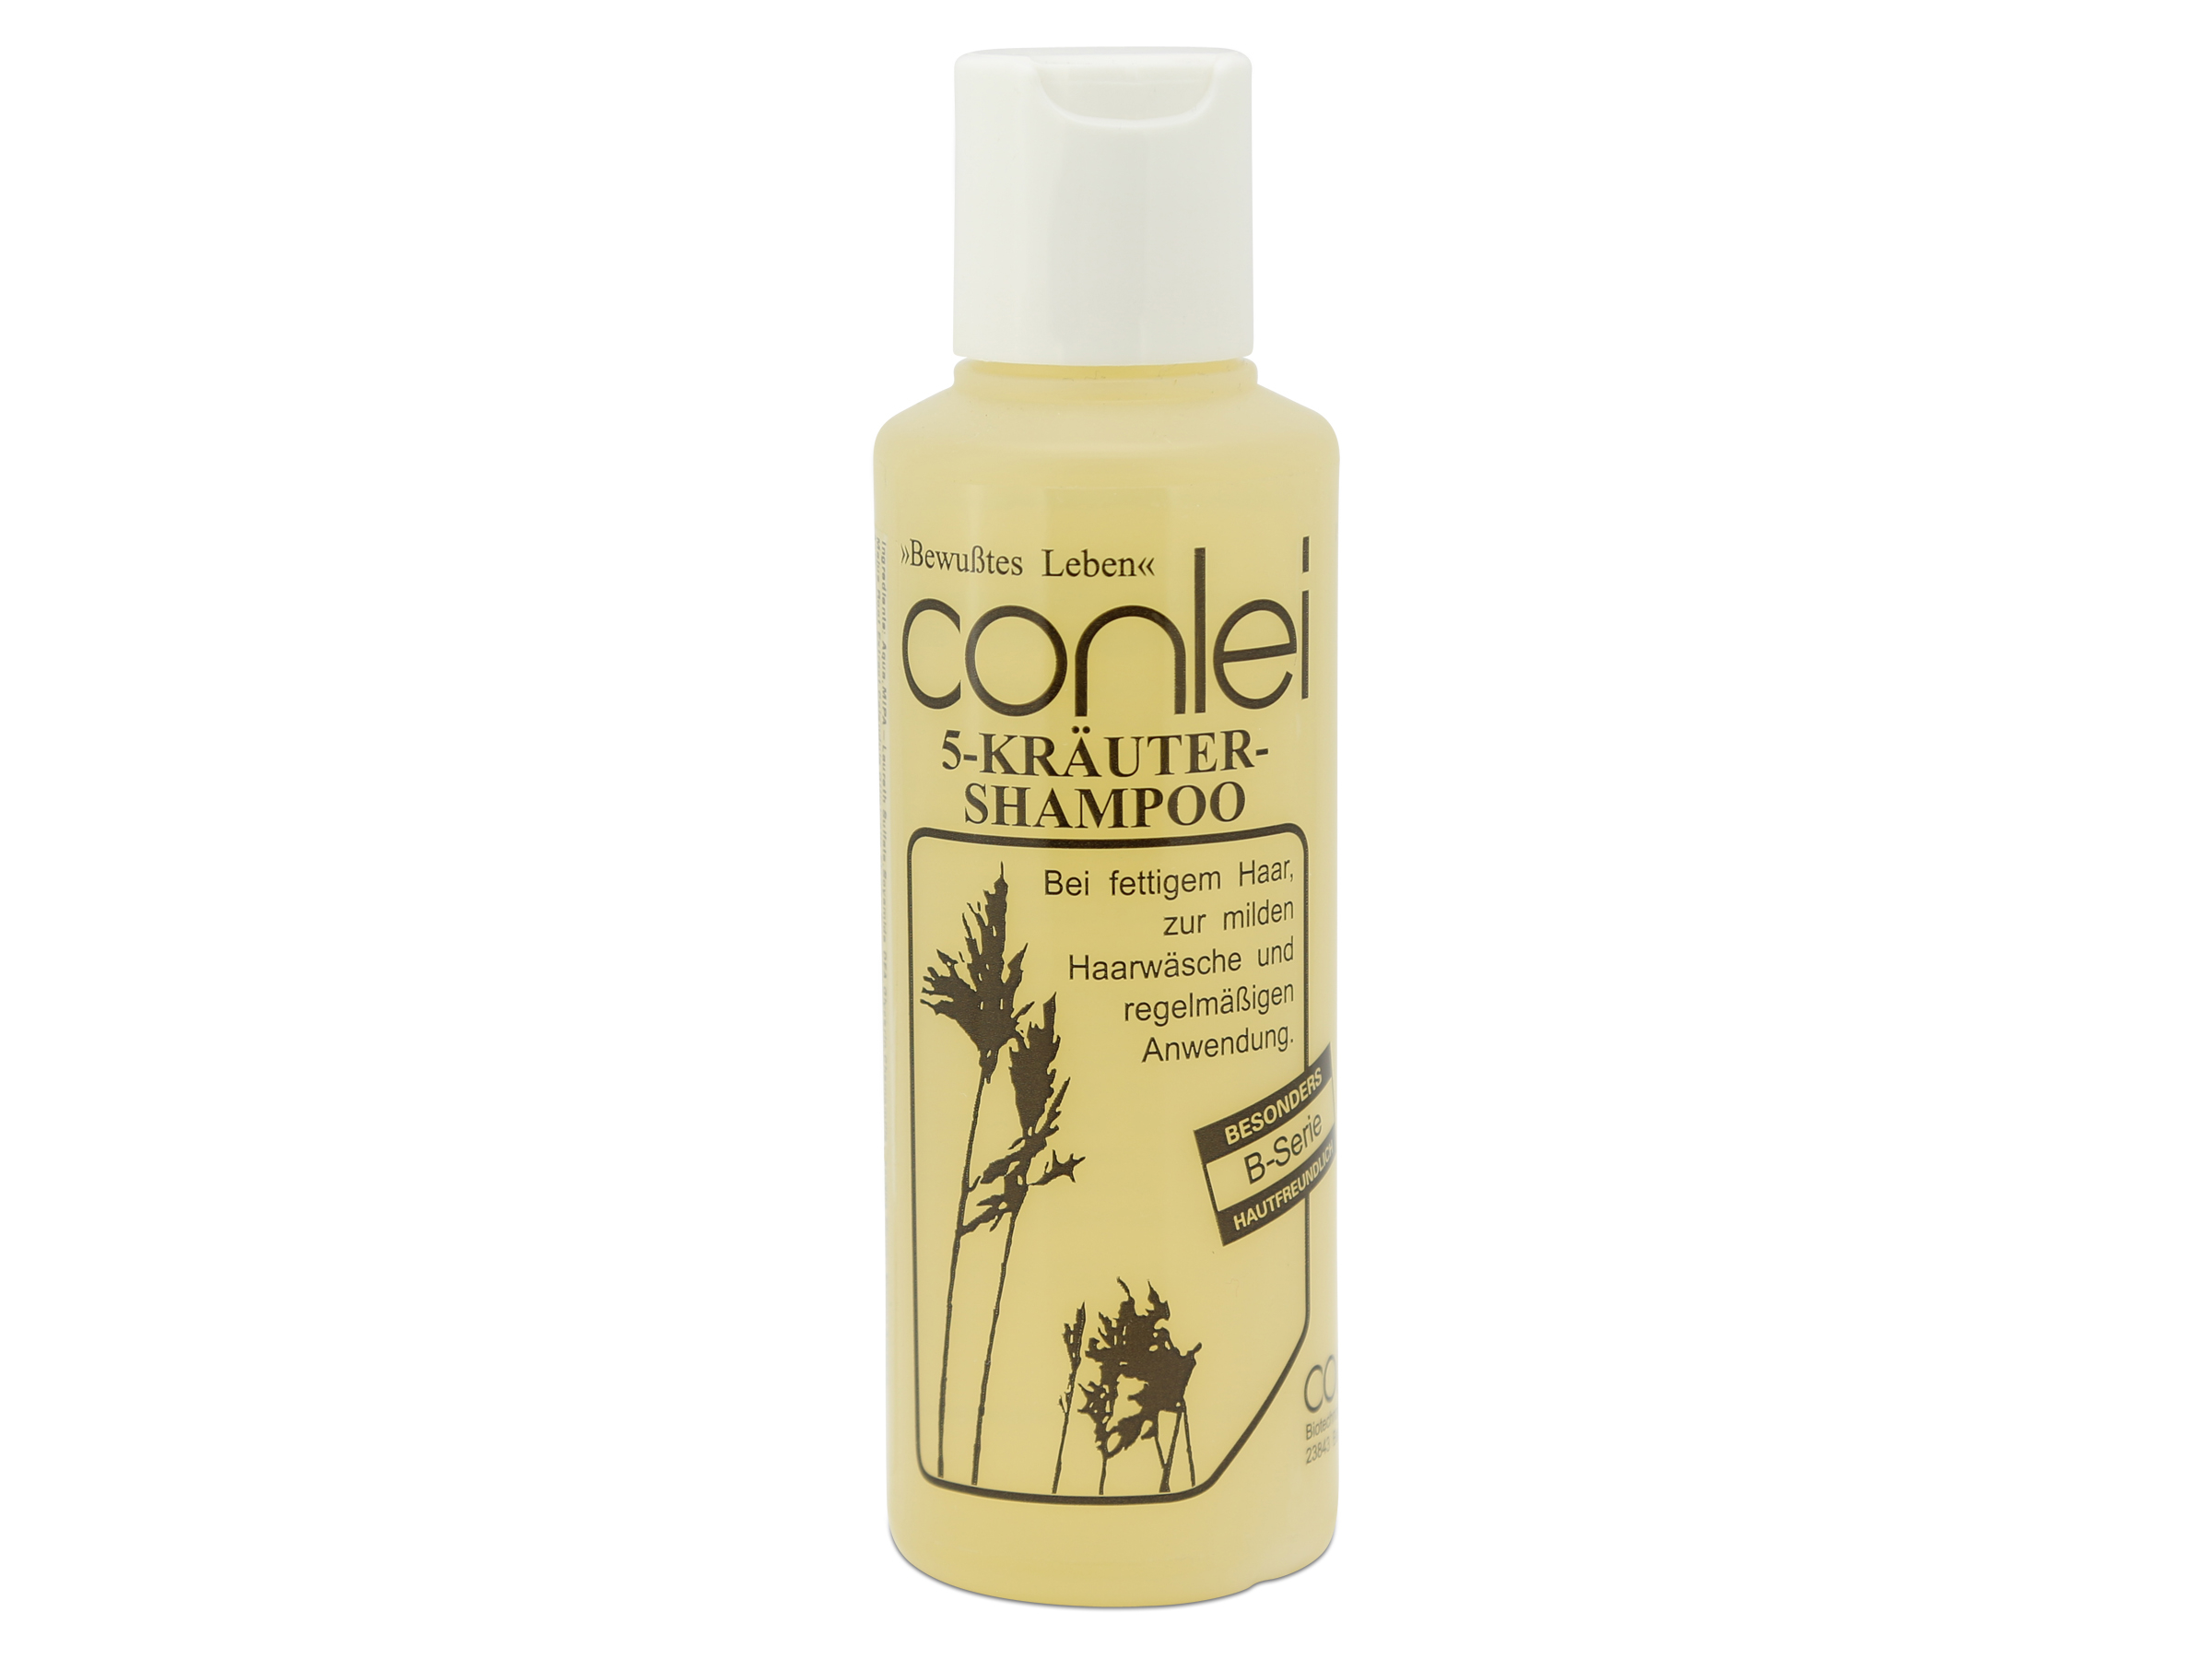 Conlei - 5-Kräuter-Shampoo 200 ml